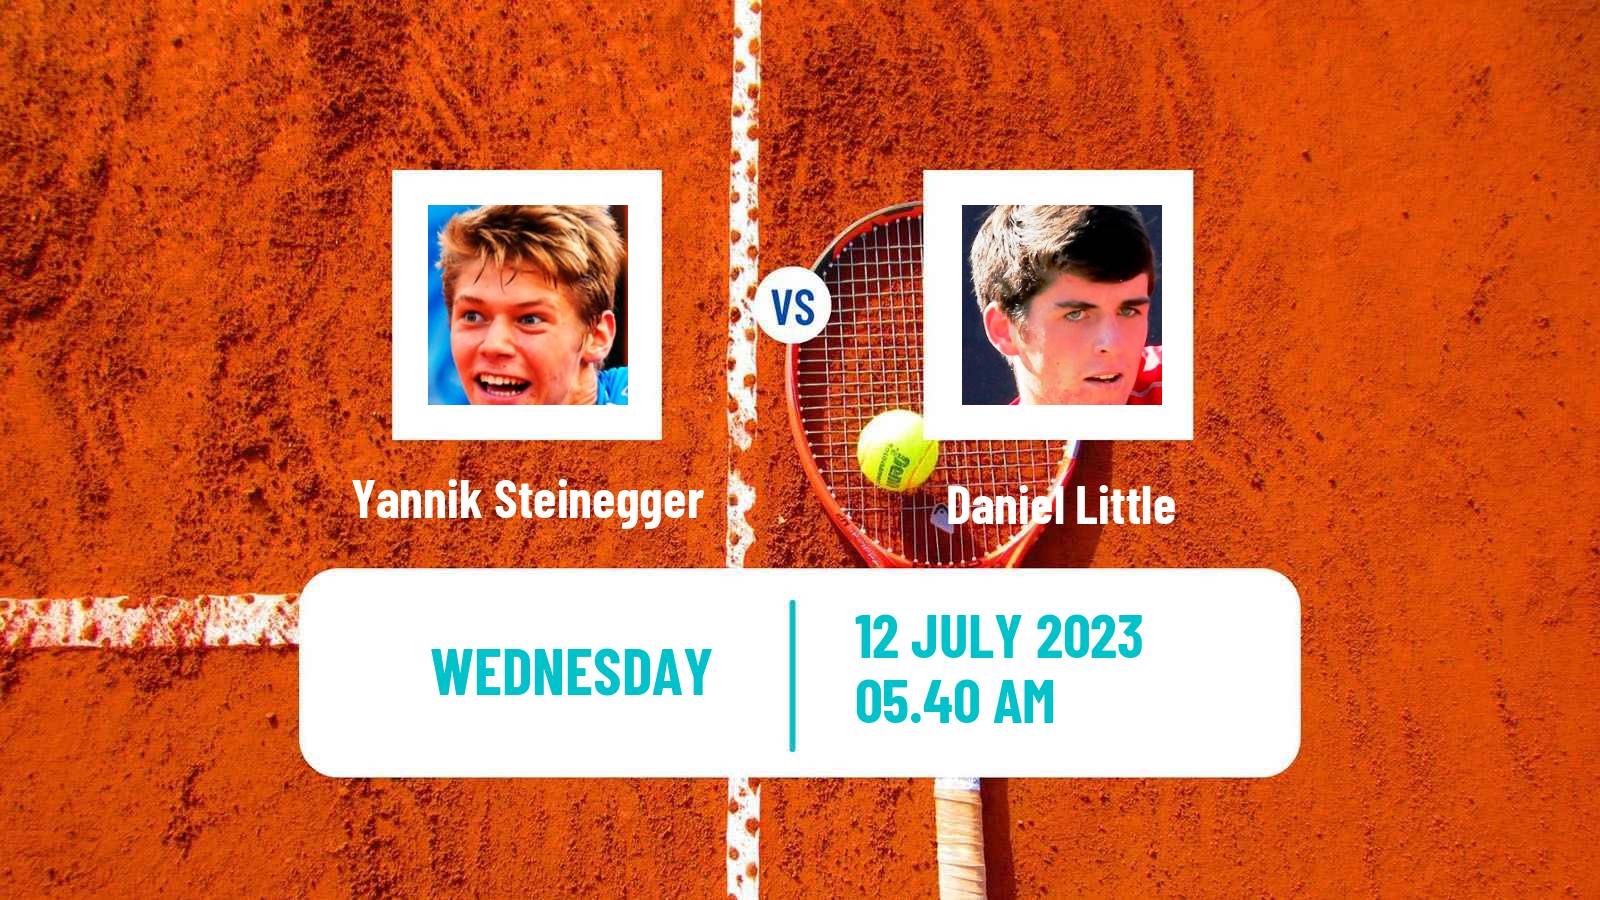 Tennis ITF M25 Nottingham 4 Men Yannik Steinegger - Daniel Little